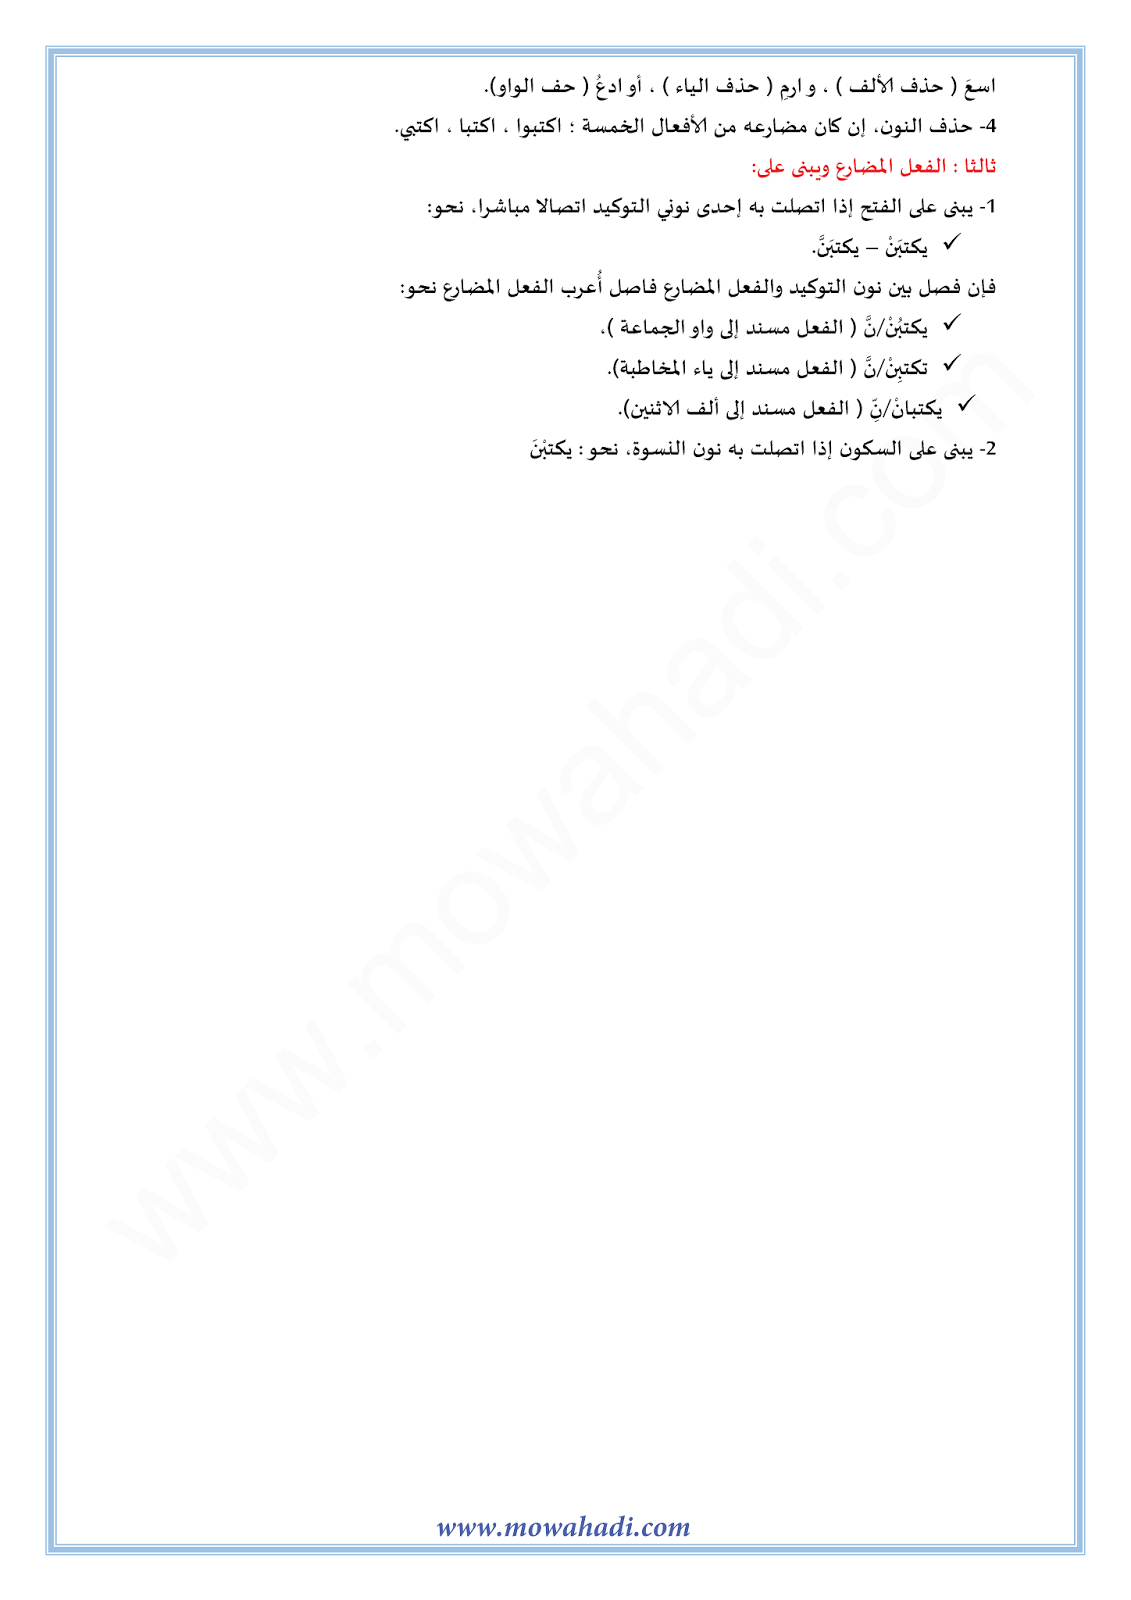 الدرس اللغوي علامات البناء في الأفعال للسنة الأولى اعدادي في مادة اللغة العربية 9-cours-dars-loghawi1_003